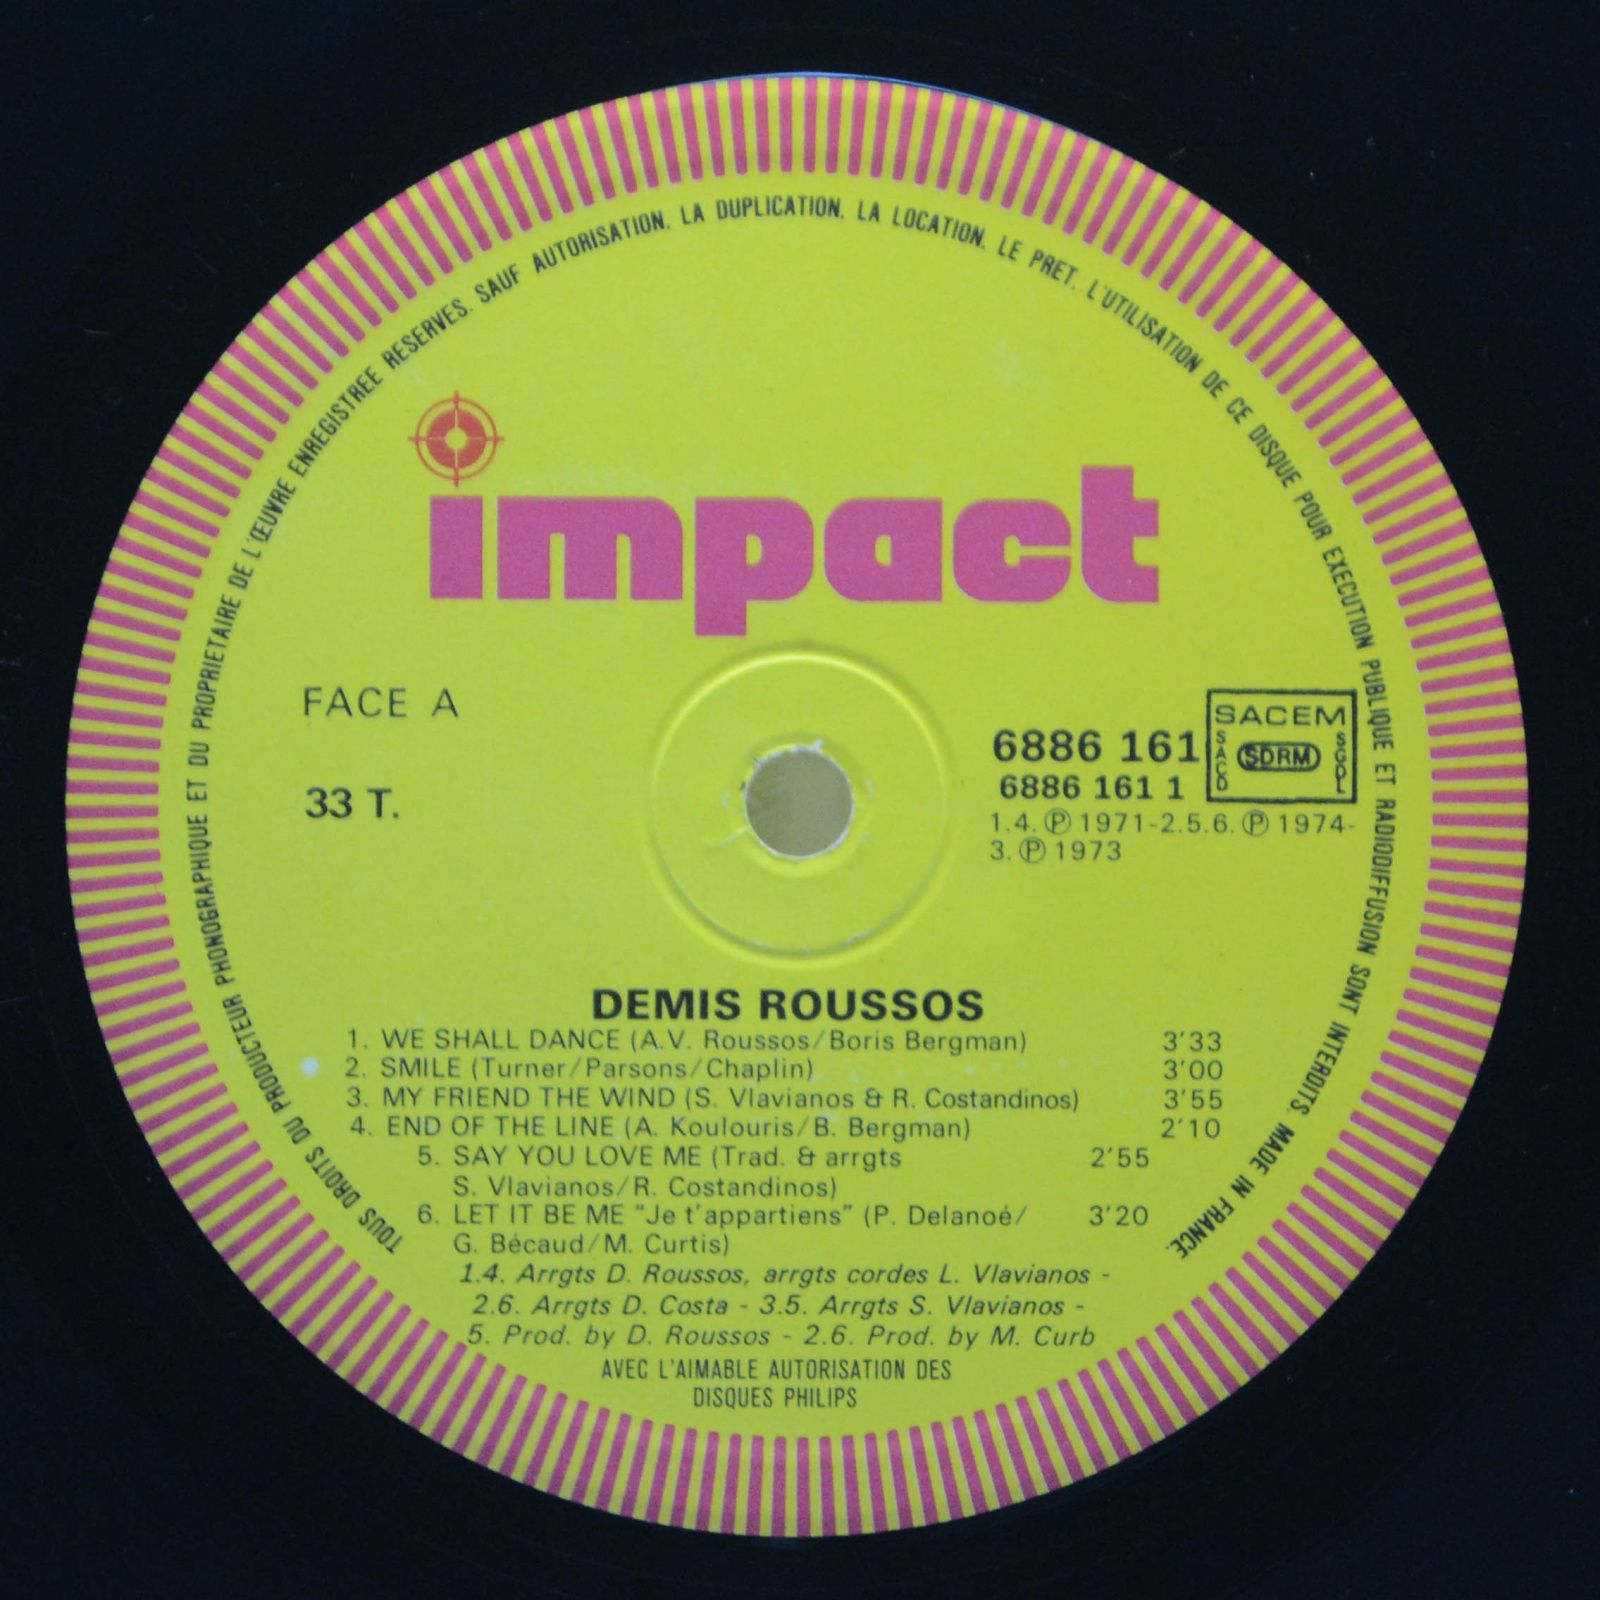 Demis Roussos — Demis Roussos (France), 1976